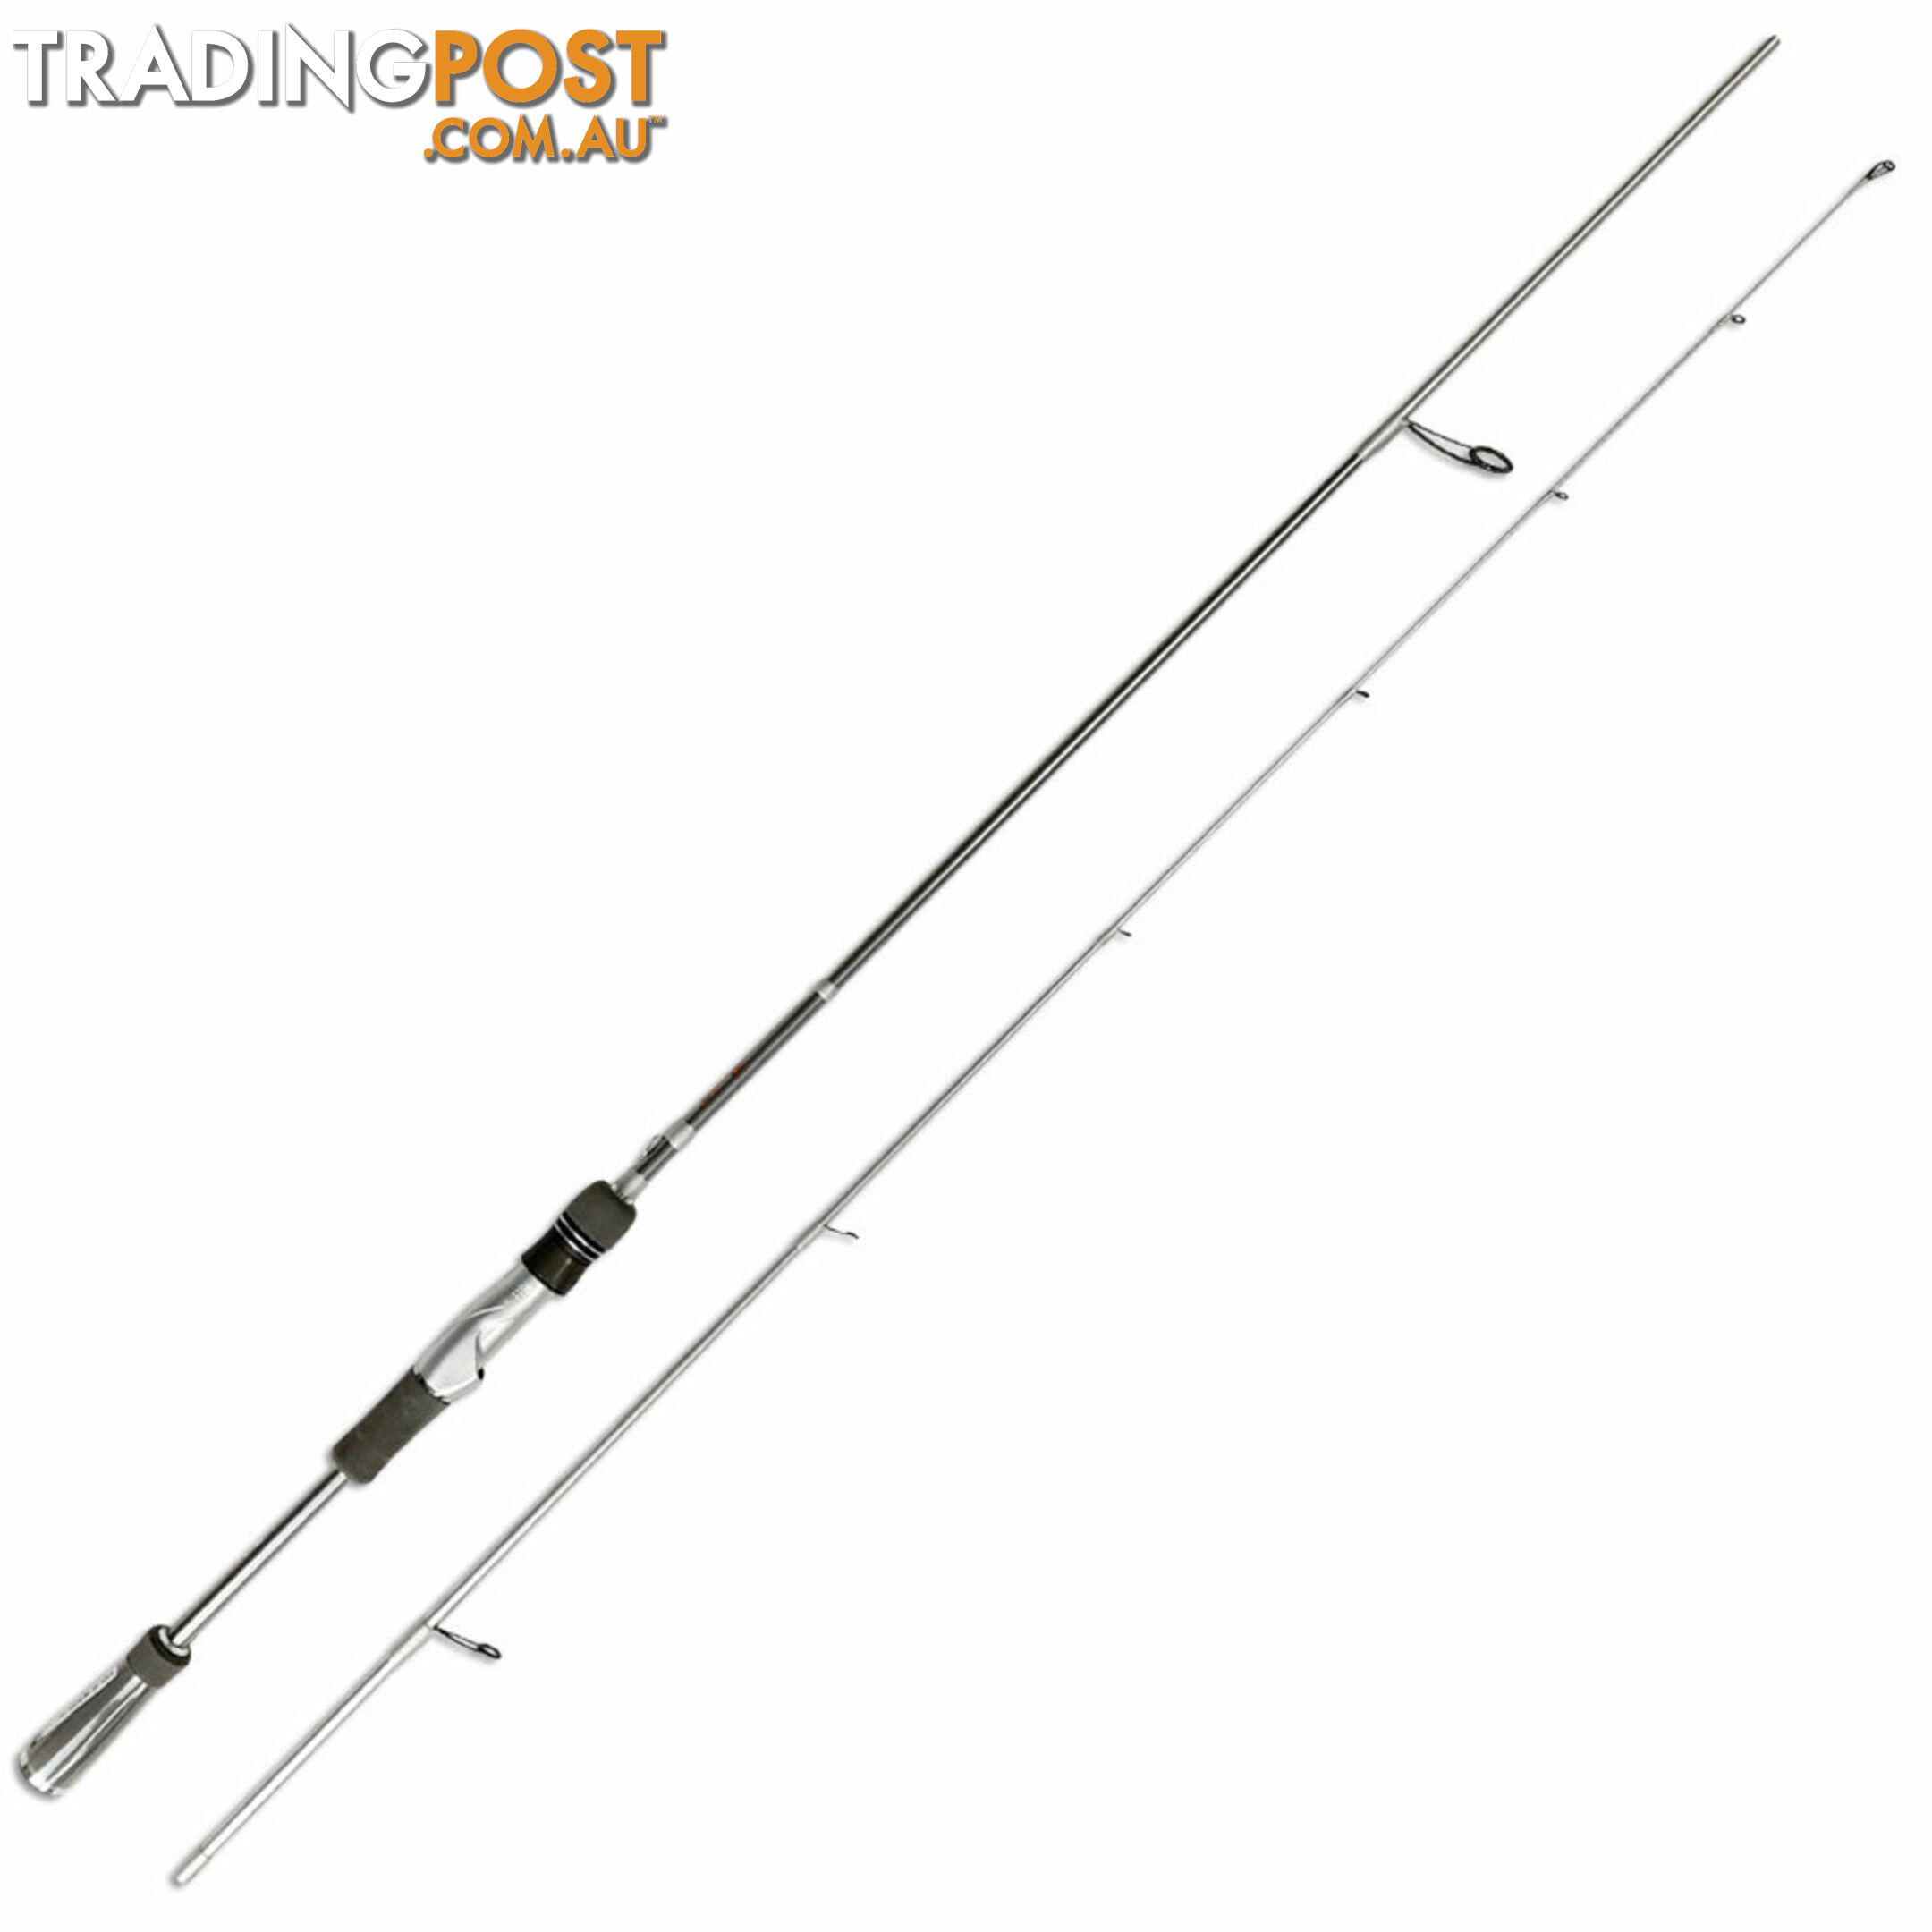 Daiwa TD Zero Rods Fishing Rod - TDZERO - Daiwa Fishing